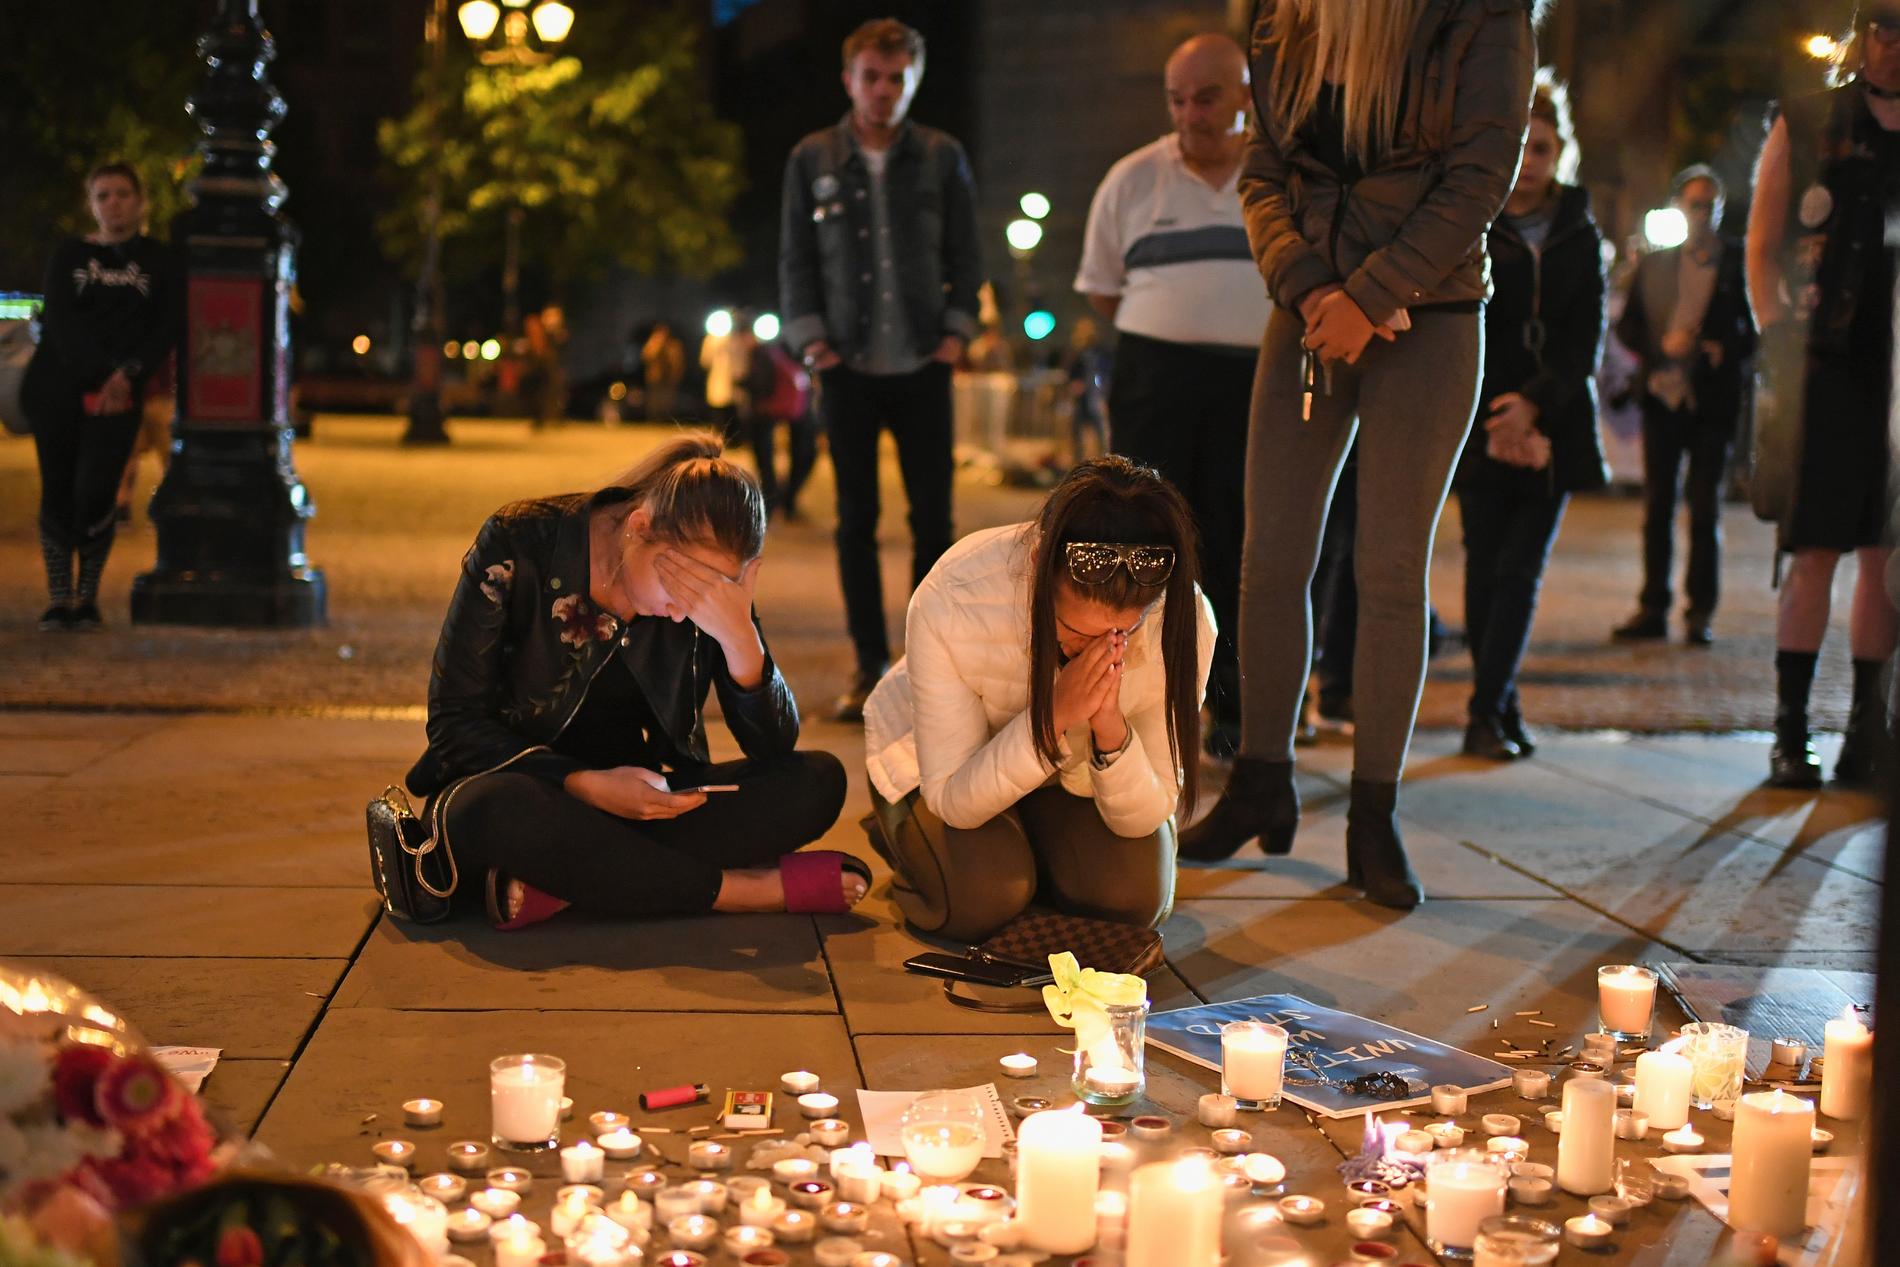 22 personer dog i terrorattacken i samband med Ariana Grandes konsert i Manchester